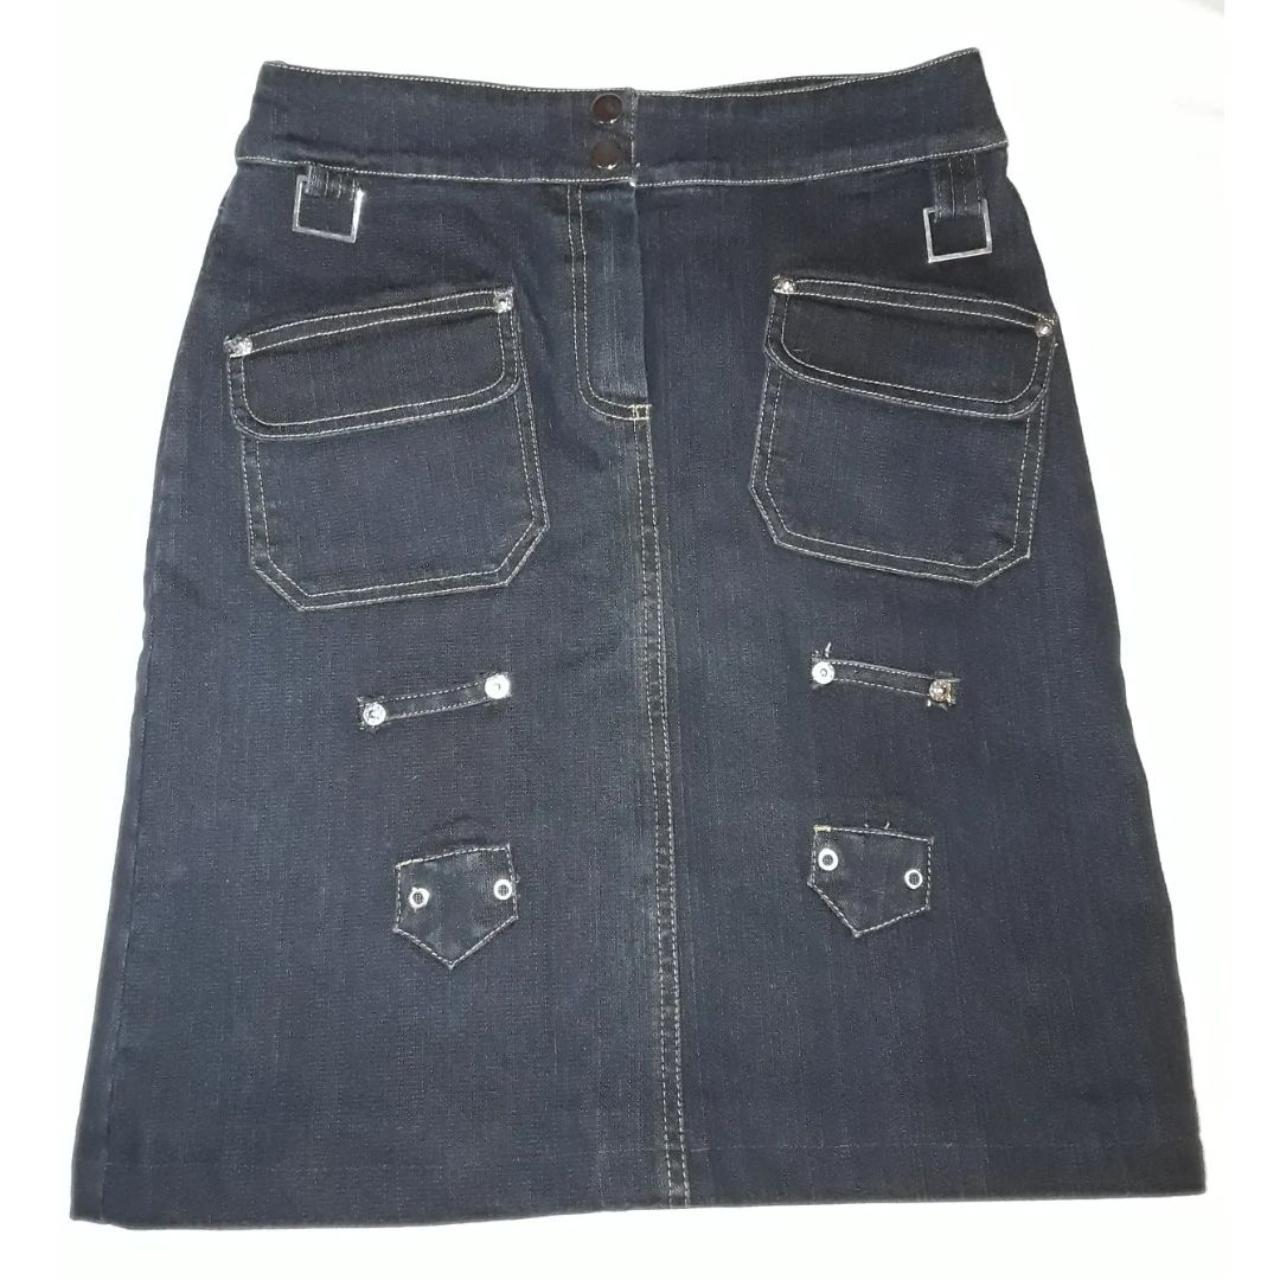 Vintage y2k jean skirt waist 37 cm 14.6